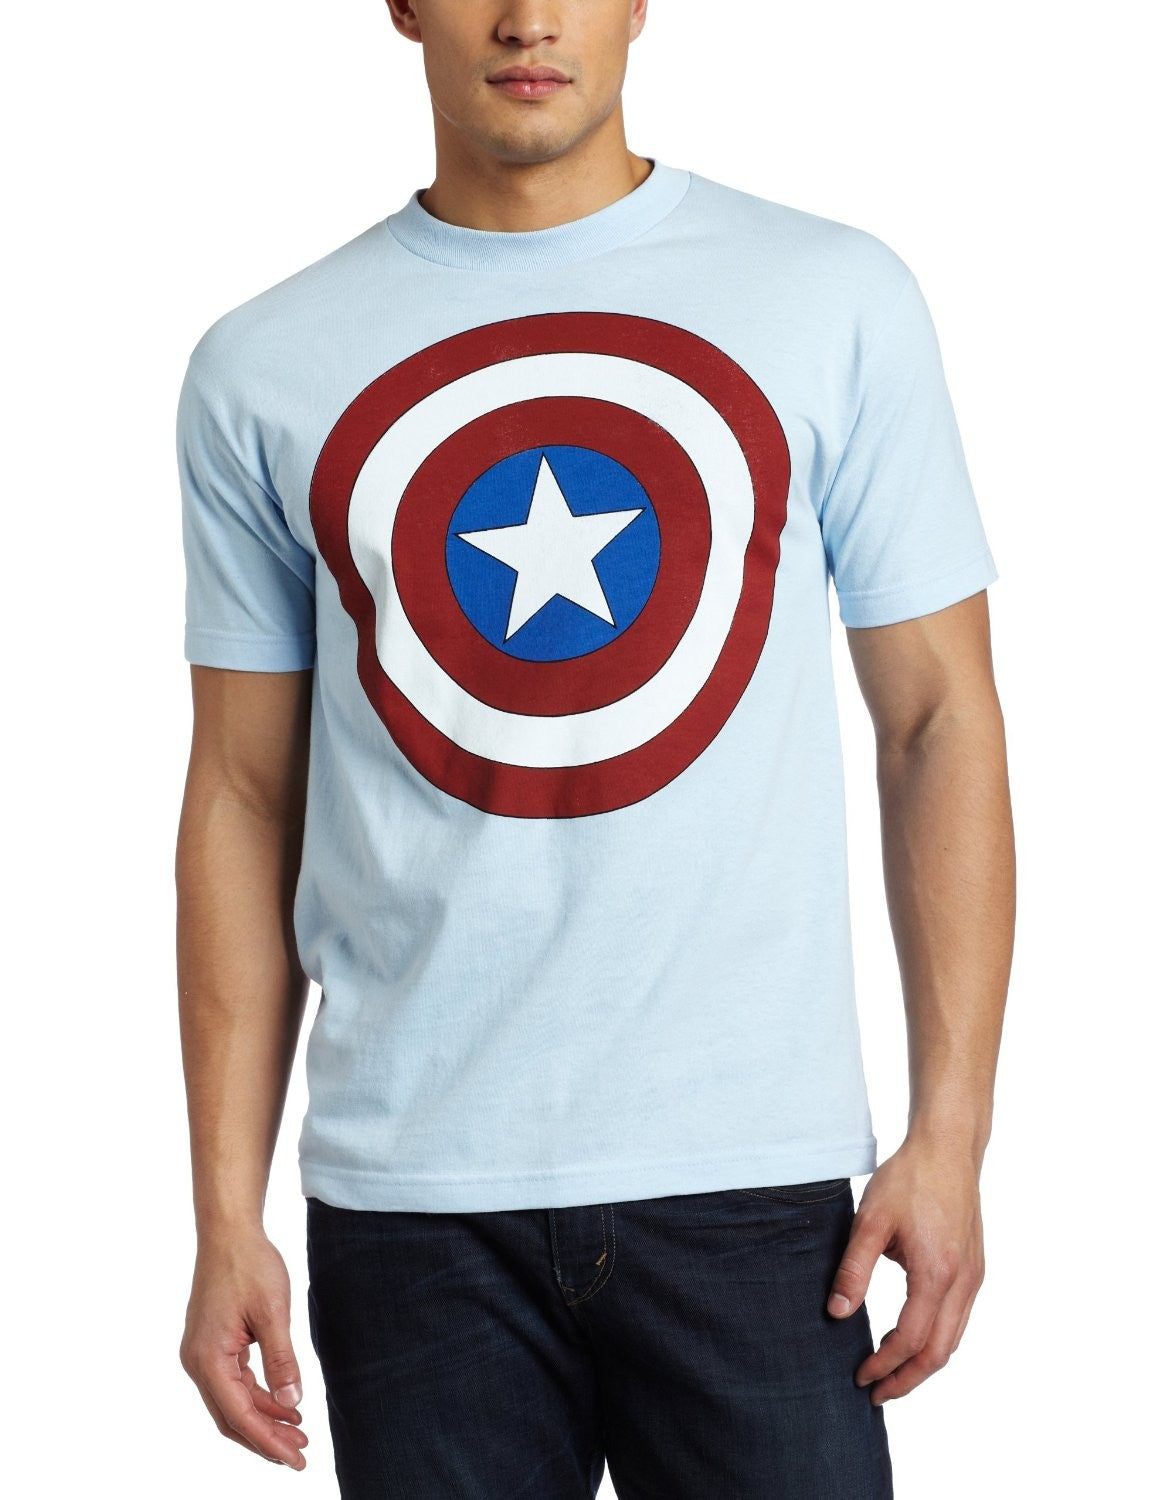 Captain America Shield Logo White Tshirt - TshirtNow.net - 1